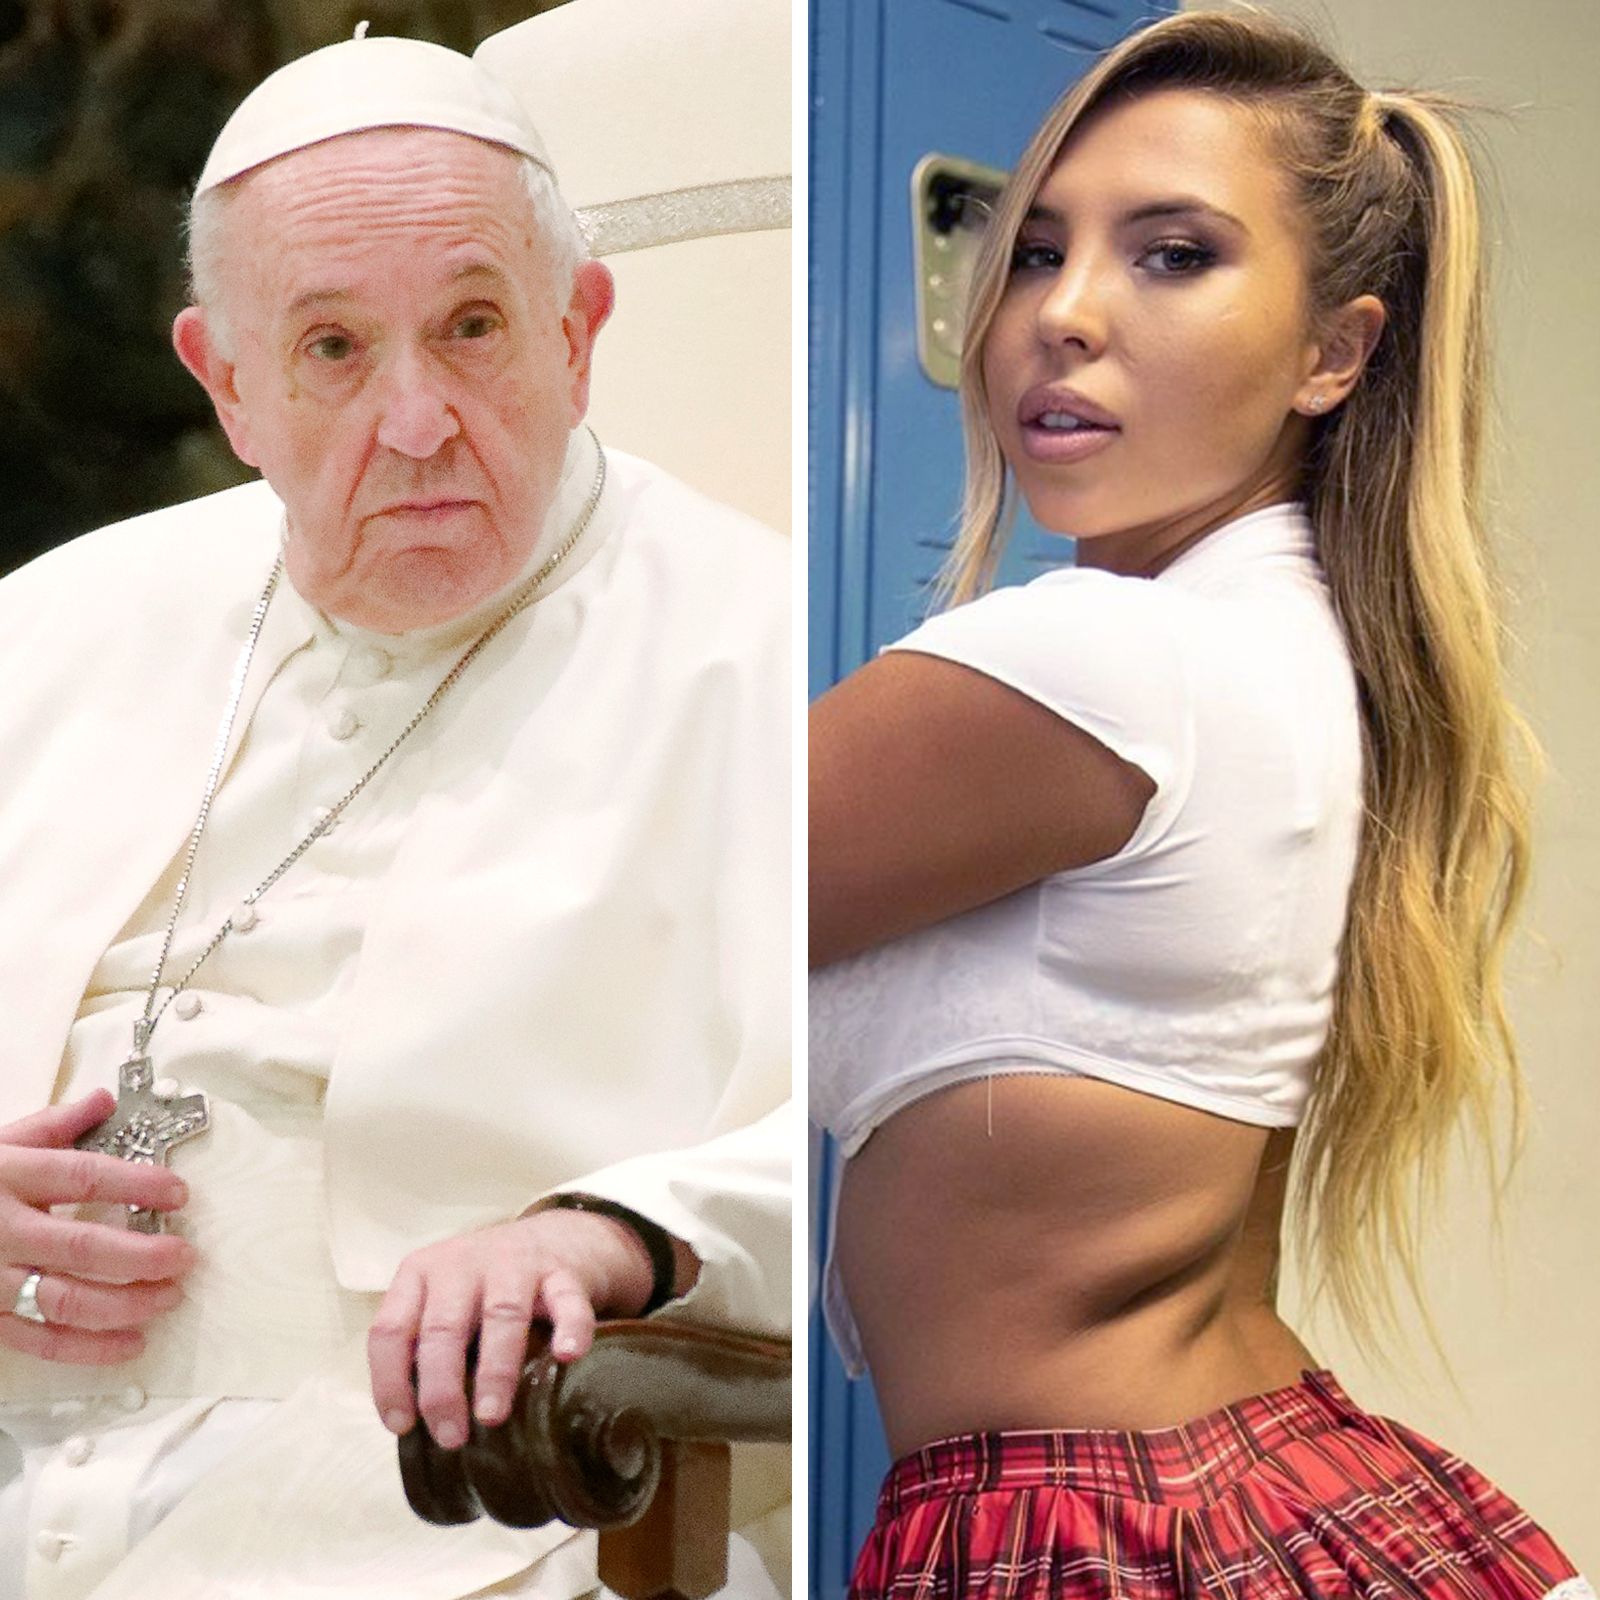 ¿Realmente le dio un like el Papa Francisco a la foto de una modelo brasileña semidesnuda?